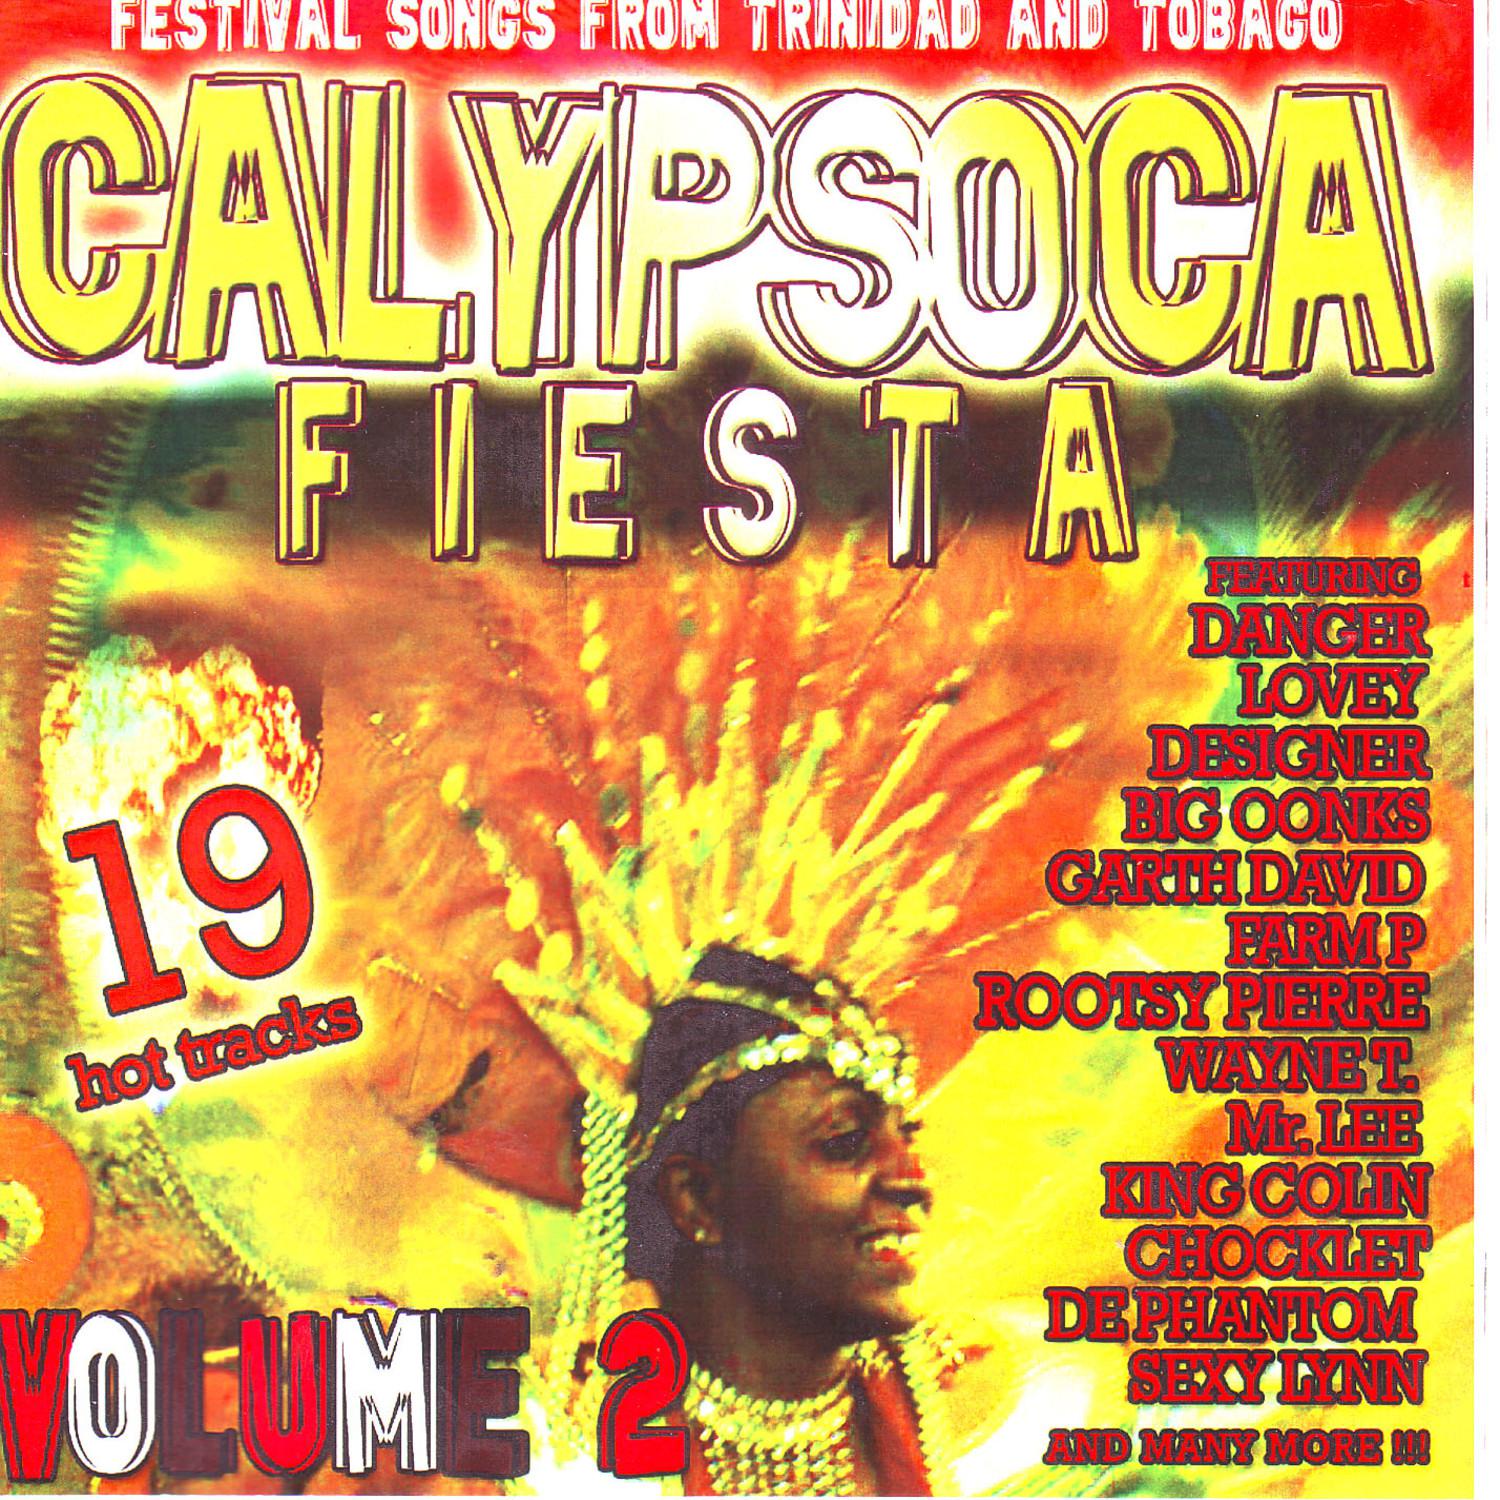 CalypSoca Fiesta Vol. 2